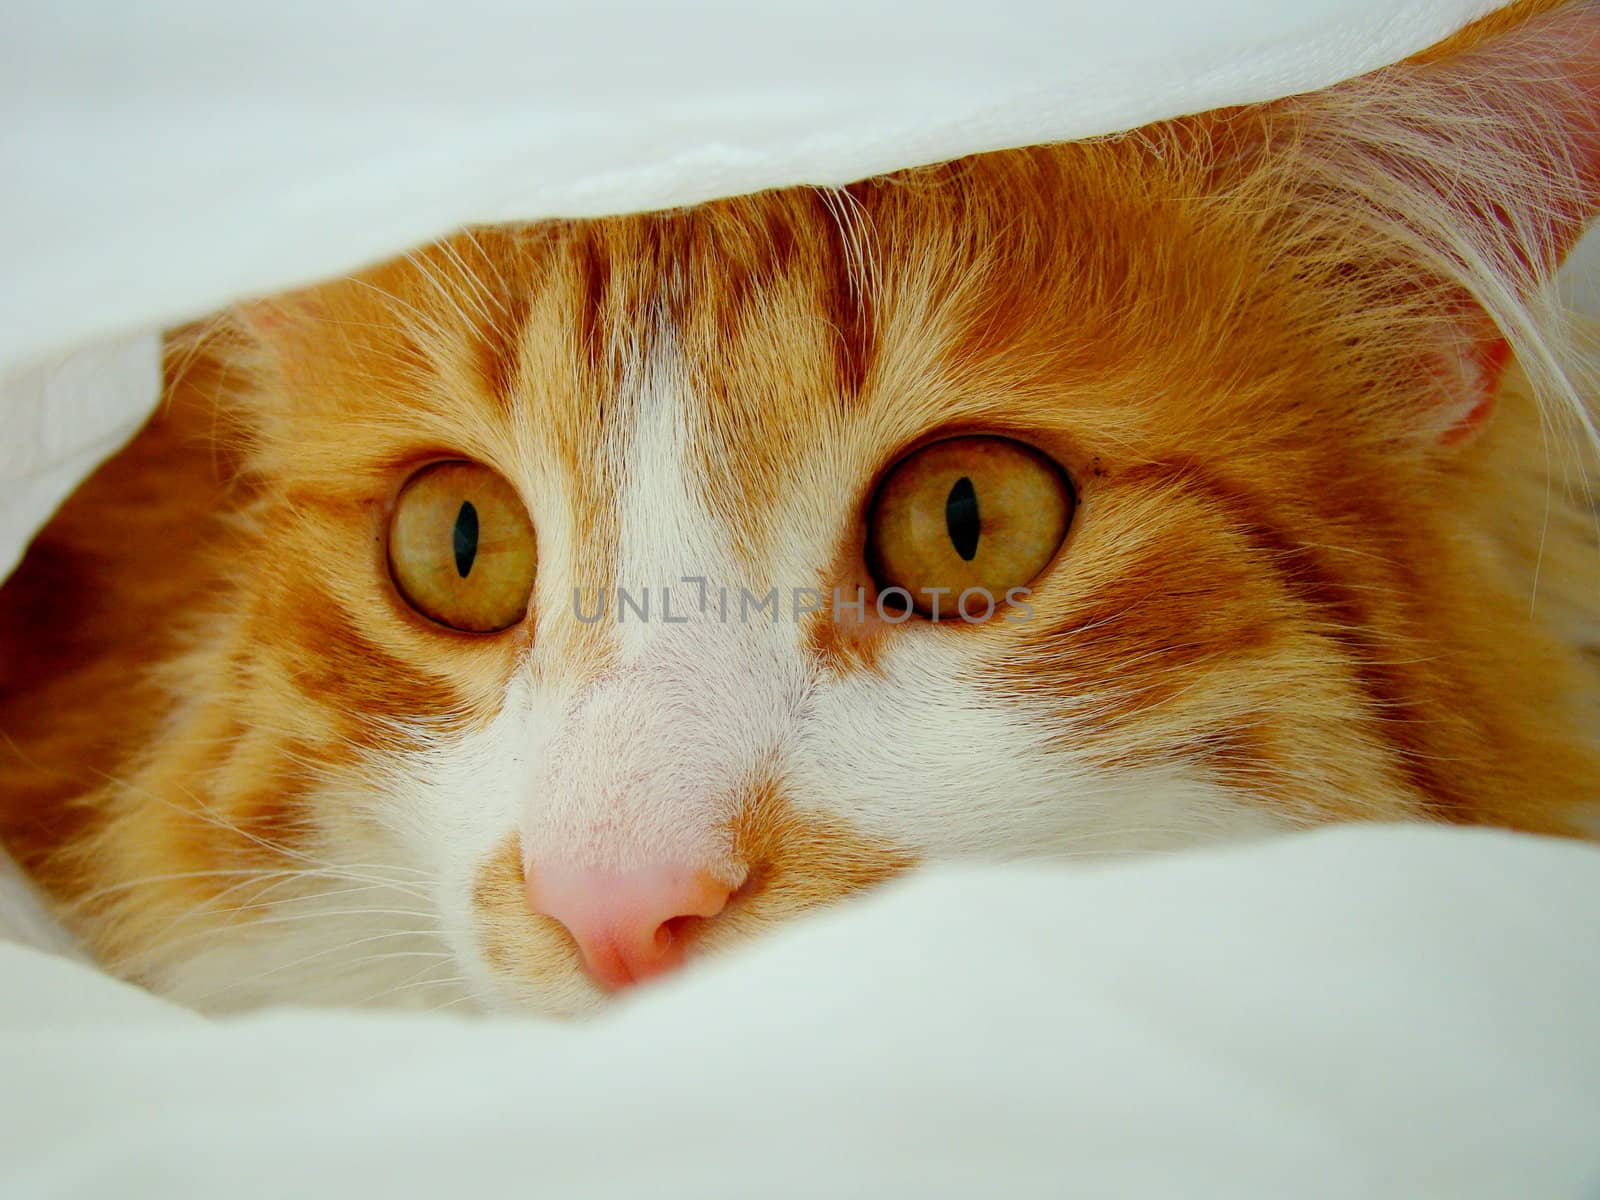 cat between blankets by elvira334